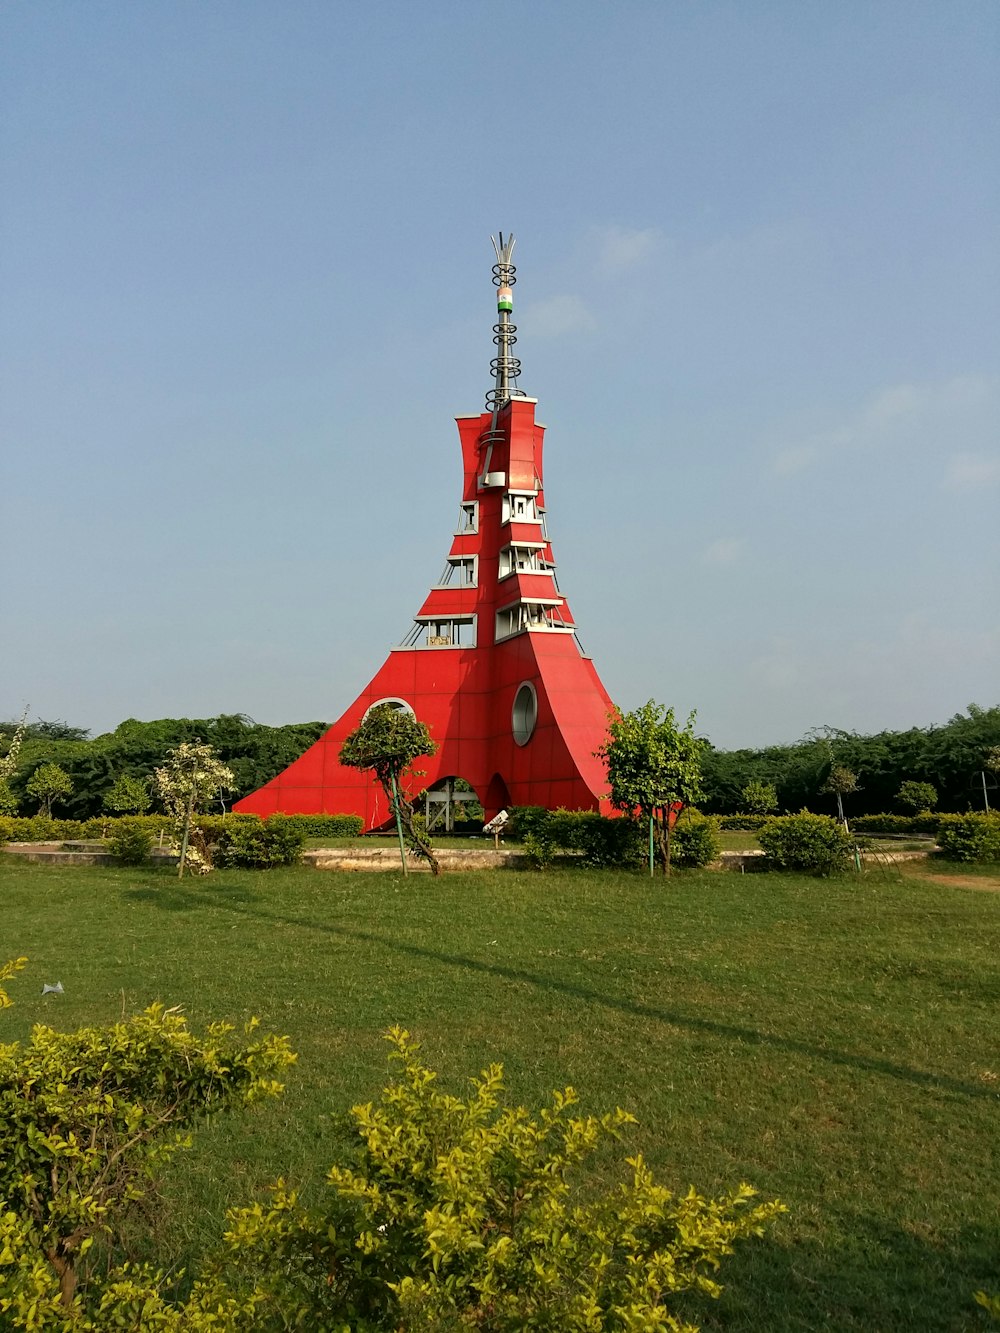 Una torre rossa molto alta seduta nel mezzo di un campo verde lussureggiante